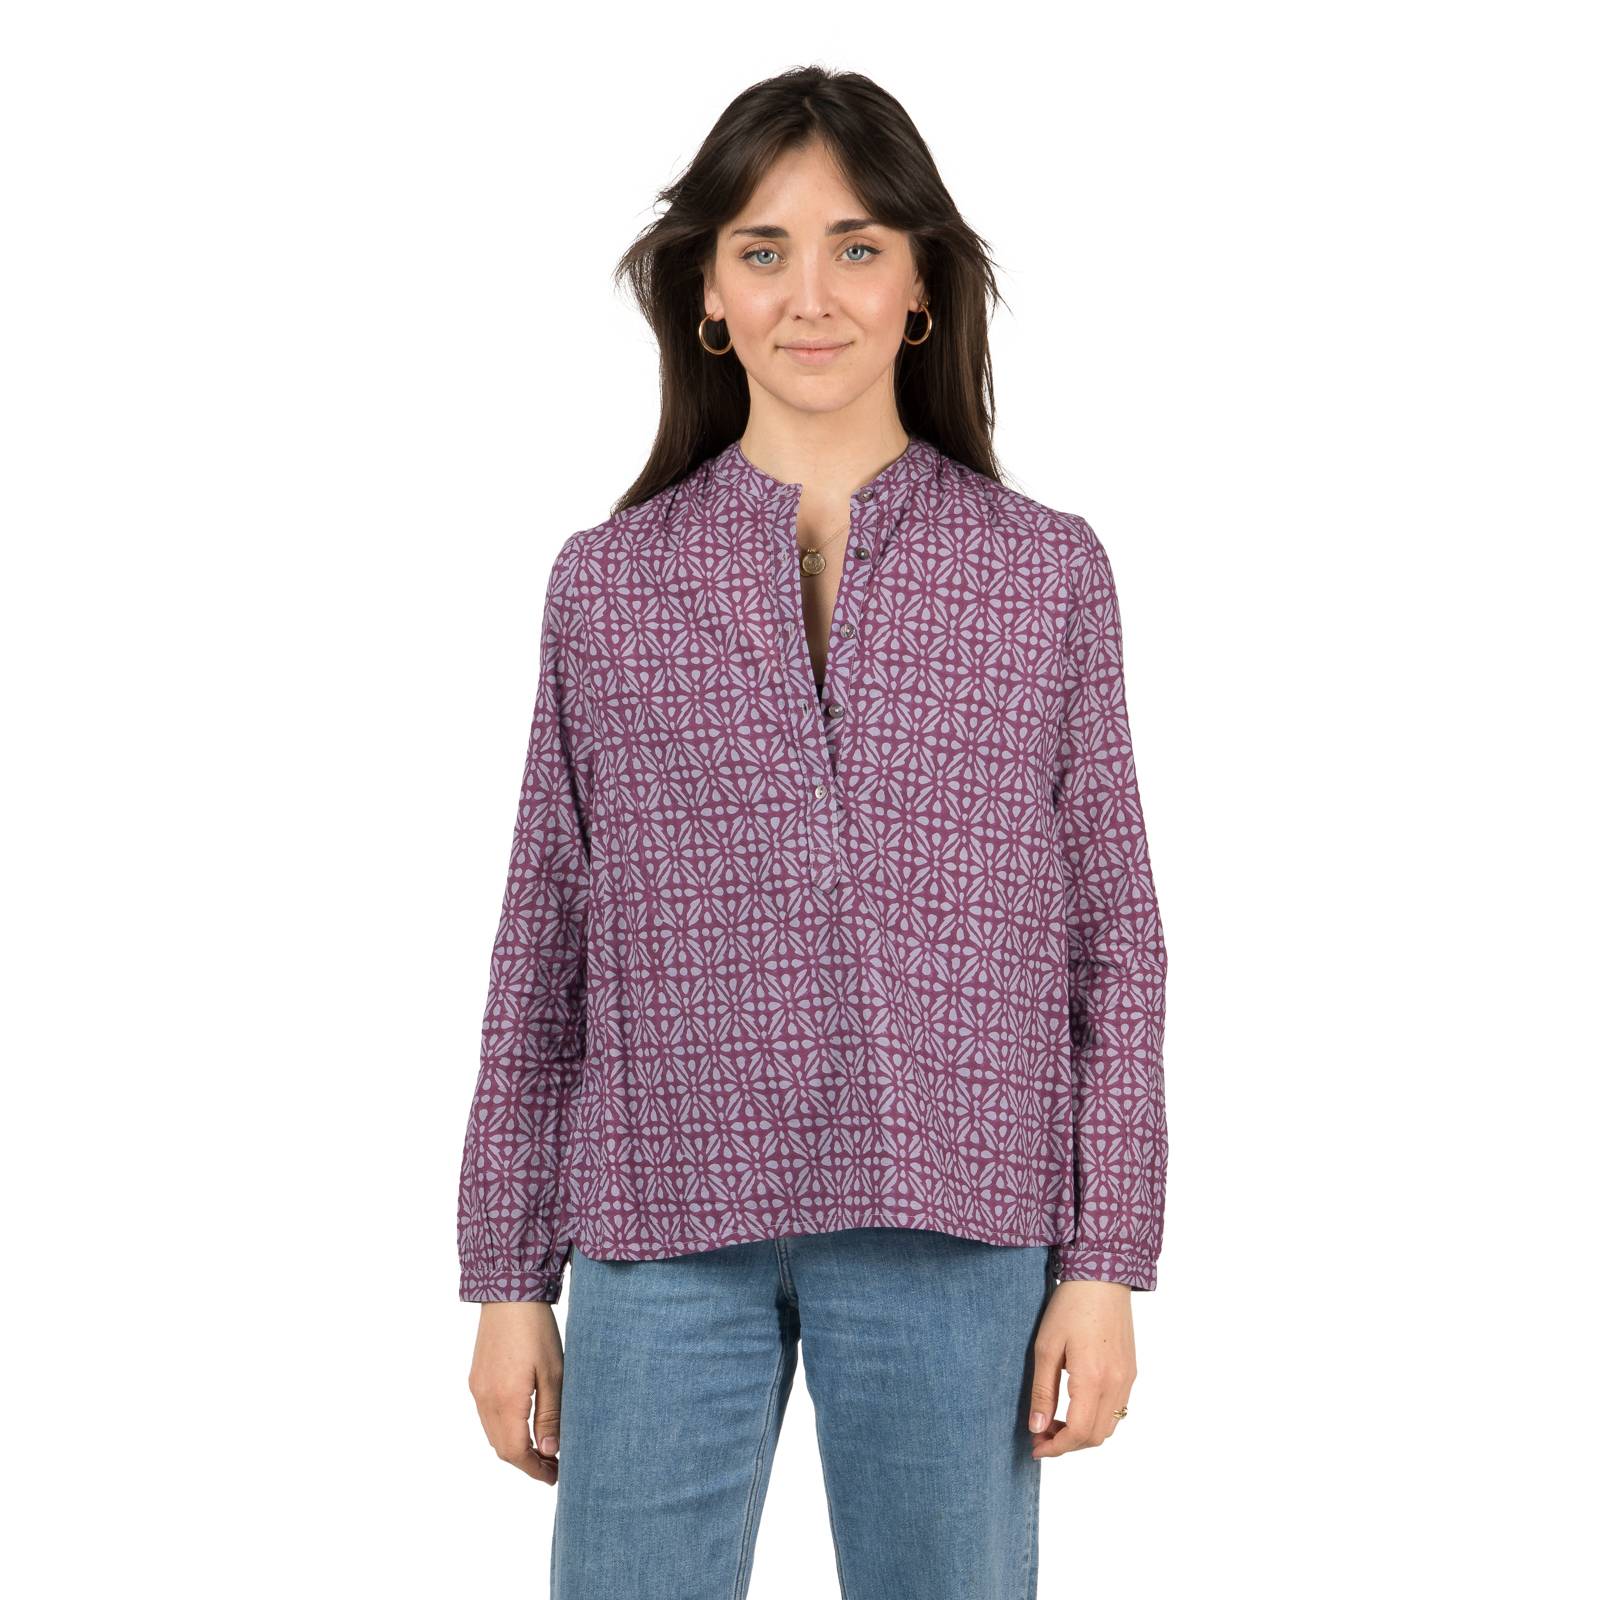 Chemises et blouses Chemise Helen Kale 100% Coton Bio Ethnique VT1607 PURPLE